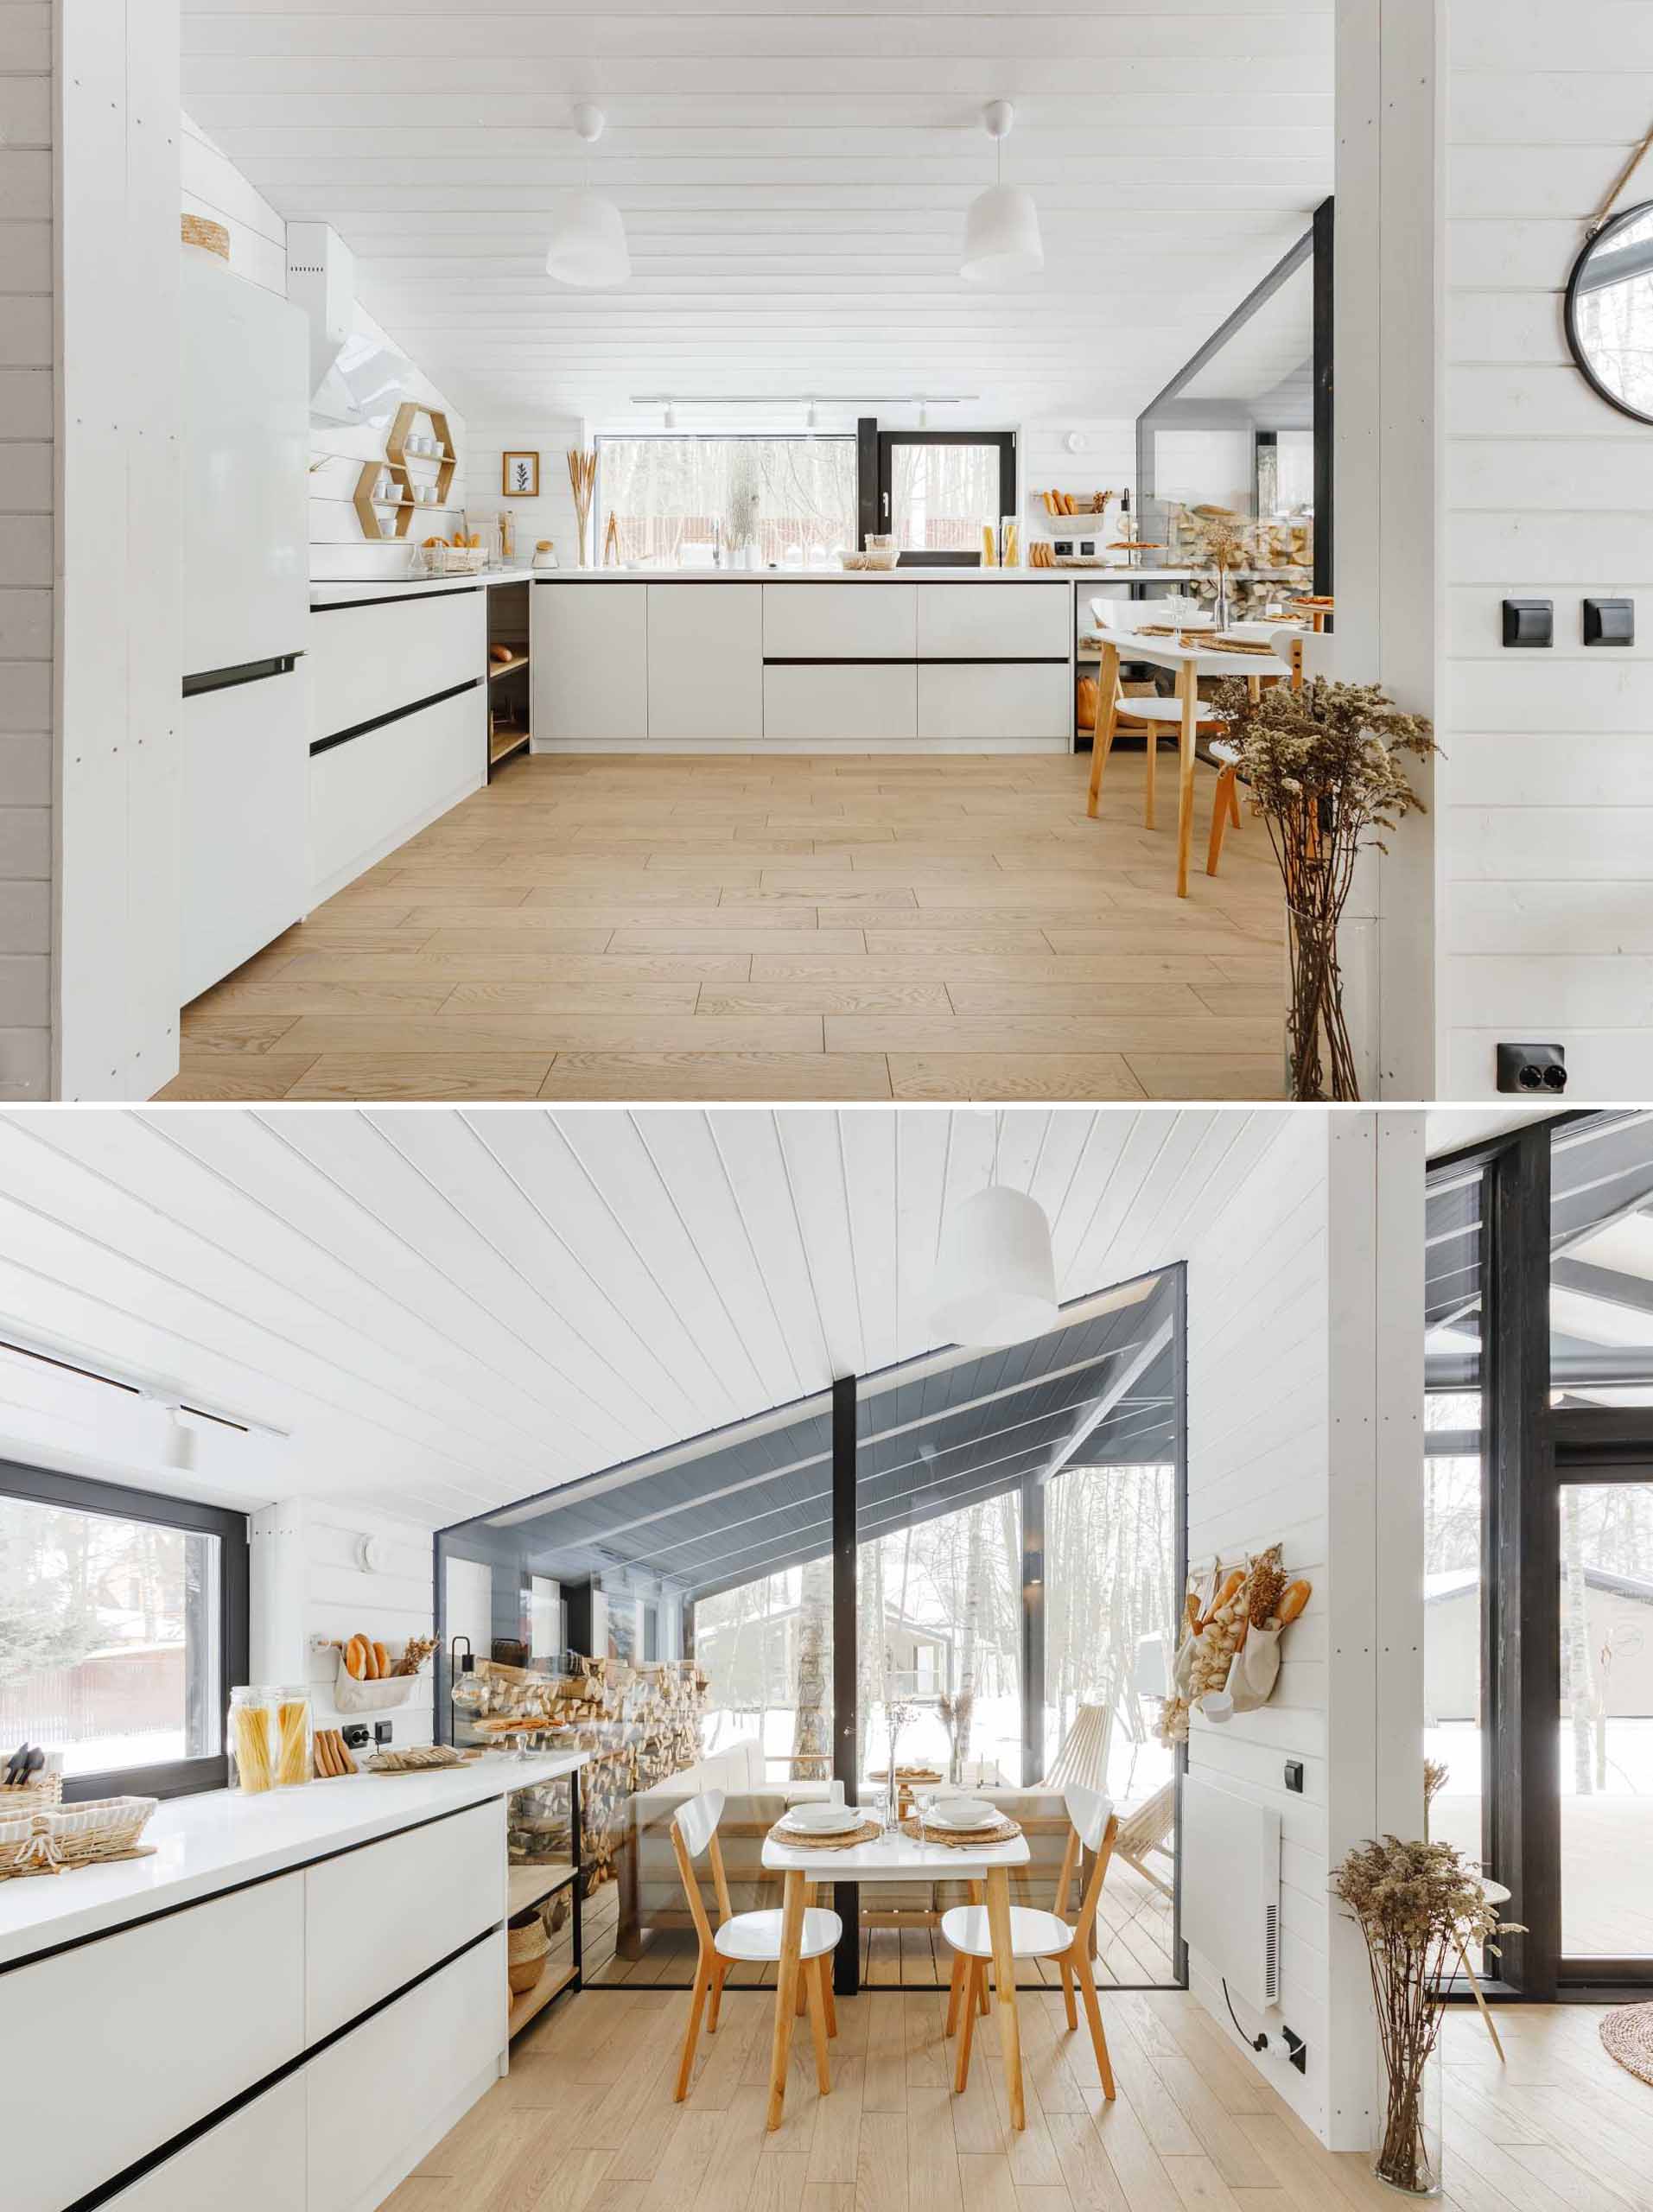 یک آشپزخانه مدرن با کابینت های سفید، کف چوبی و یک گوشه کوچک صبحانه.